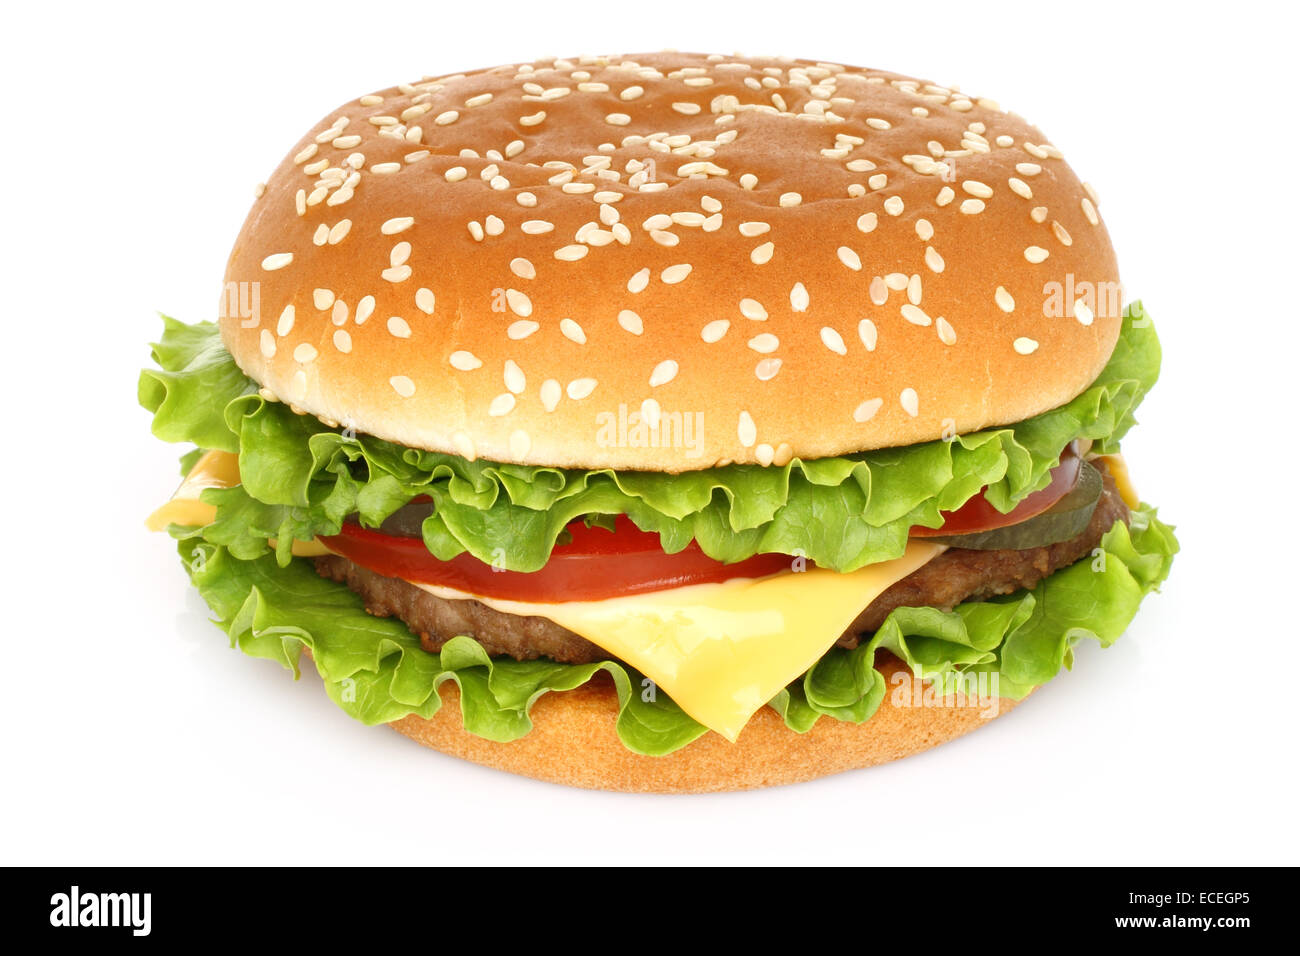 Big hamburger on white background Stock Photo